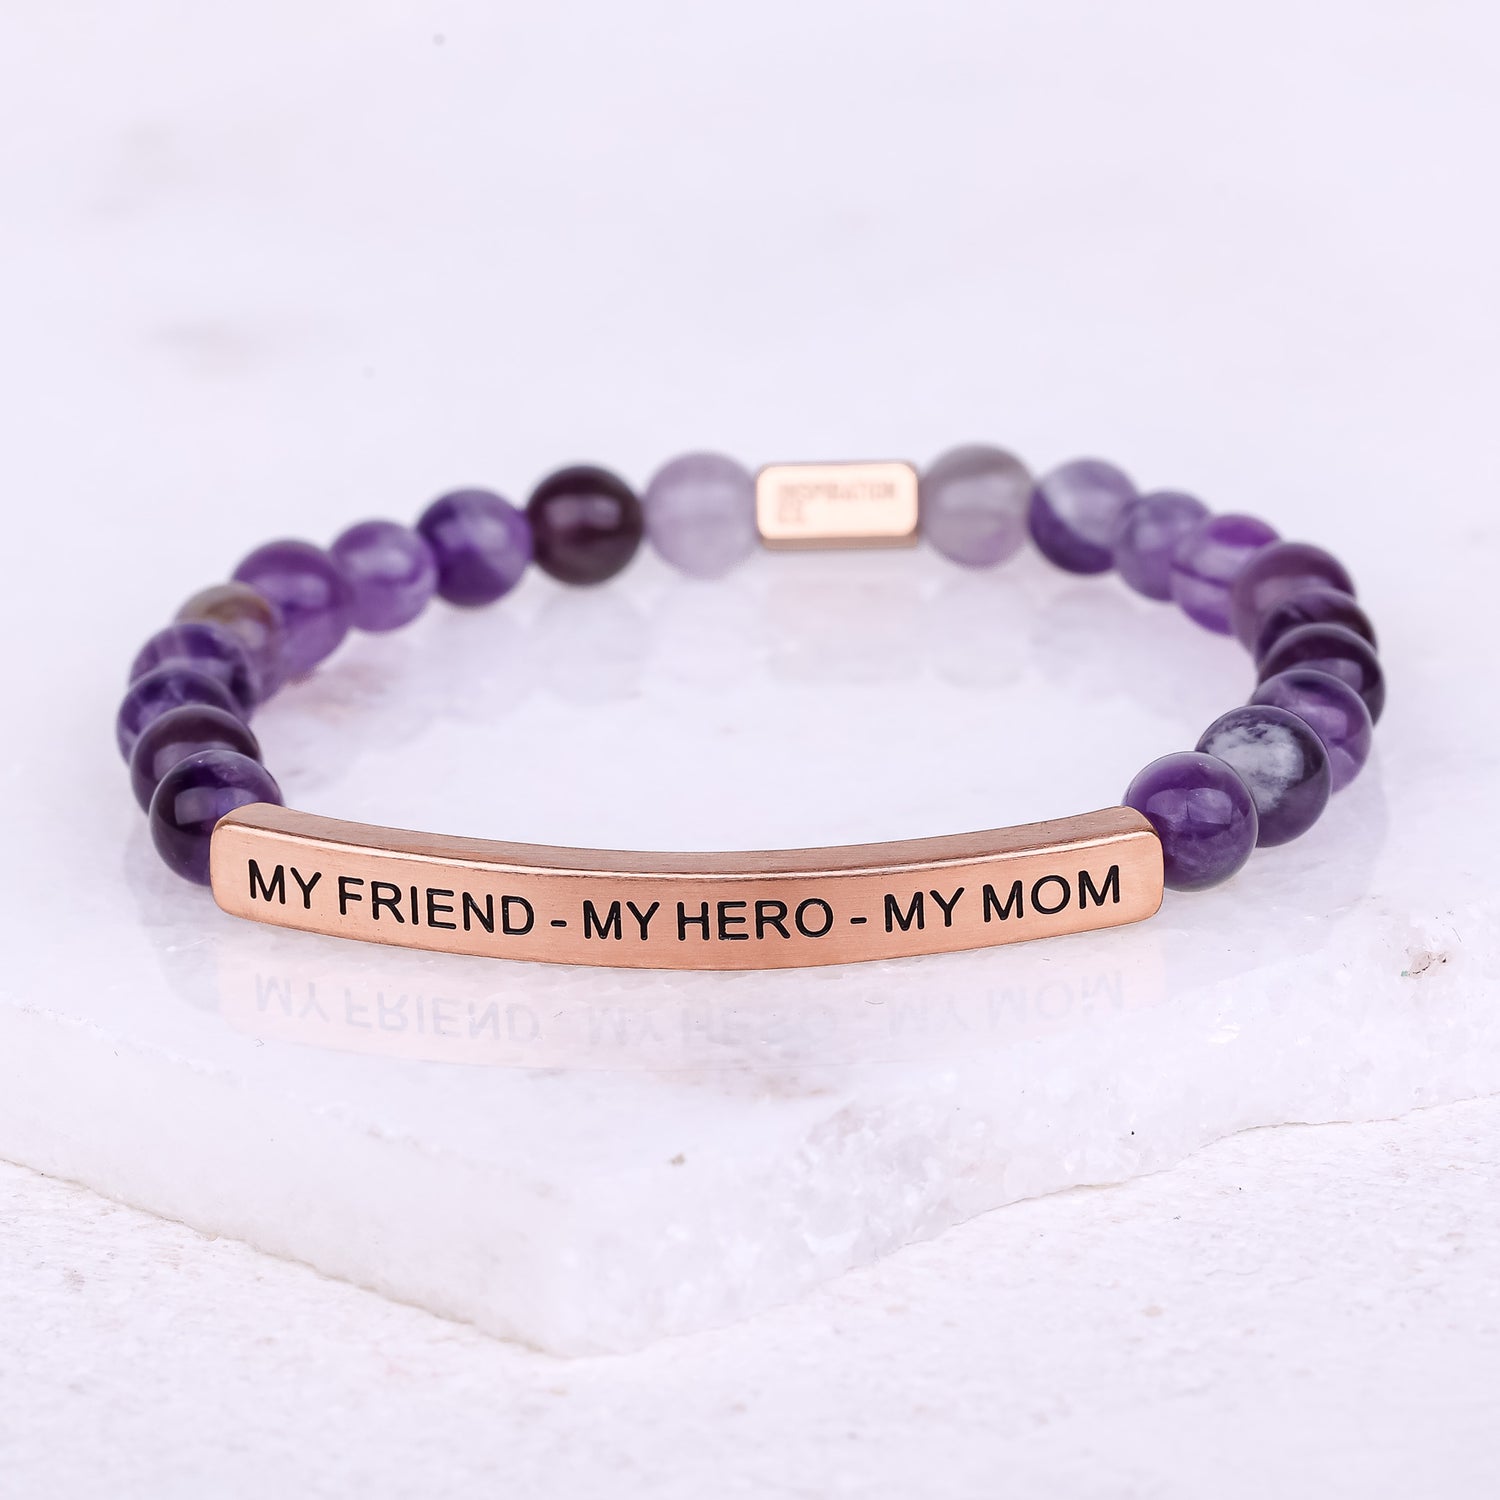 MY FRIEND - MY HERO - MY MOM